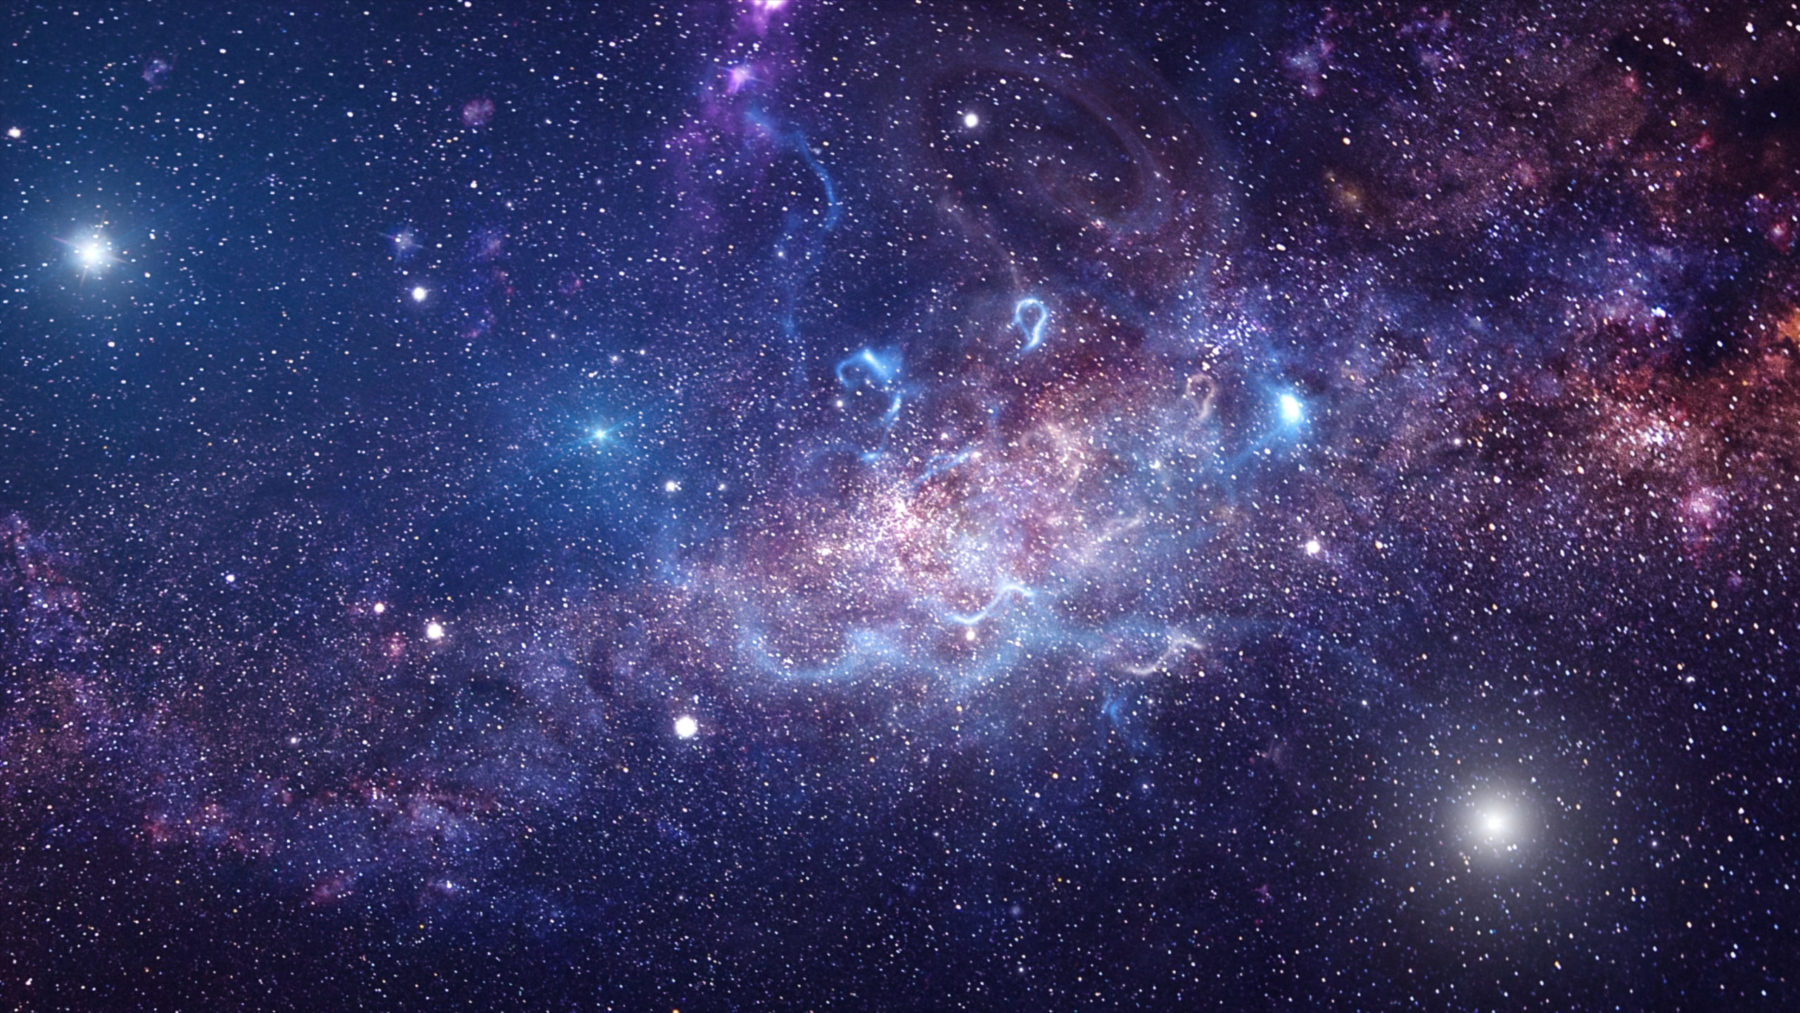 Vue de l'espace en couleurs bleu-violet, avec des étoiles et la voie lactée